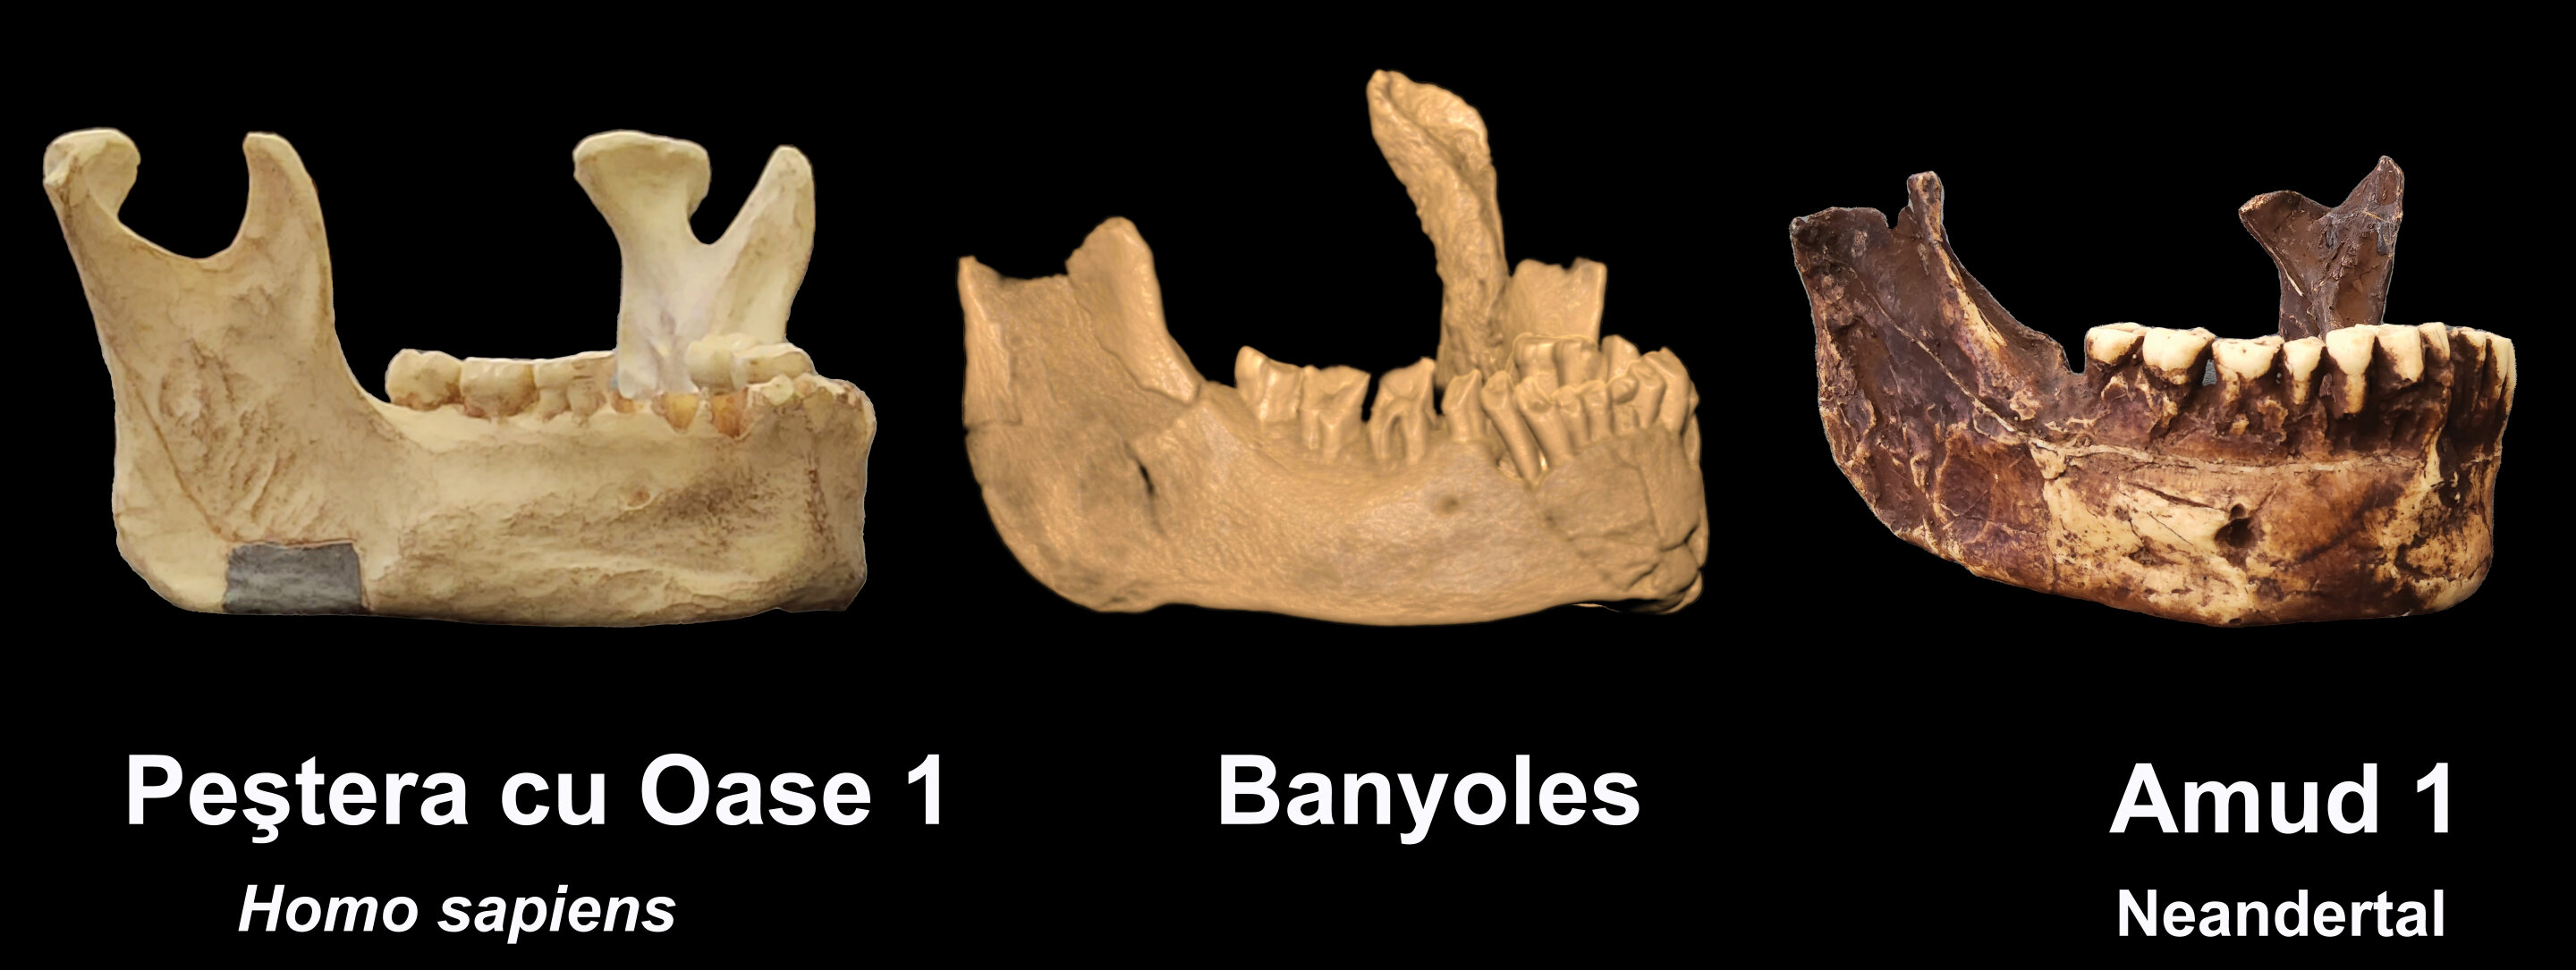 Древняя челюсть может свидетельствовать о самом раннем присутствии людей в Европе